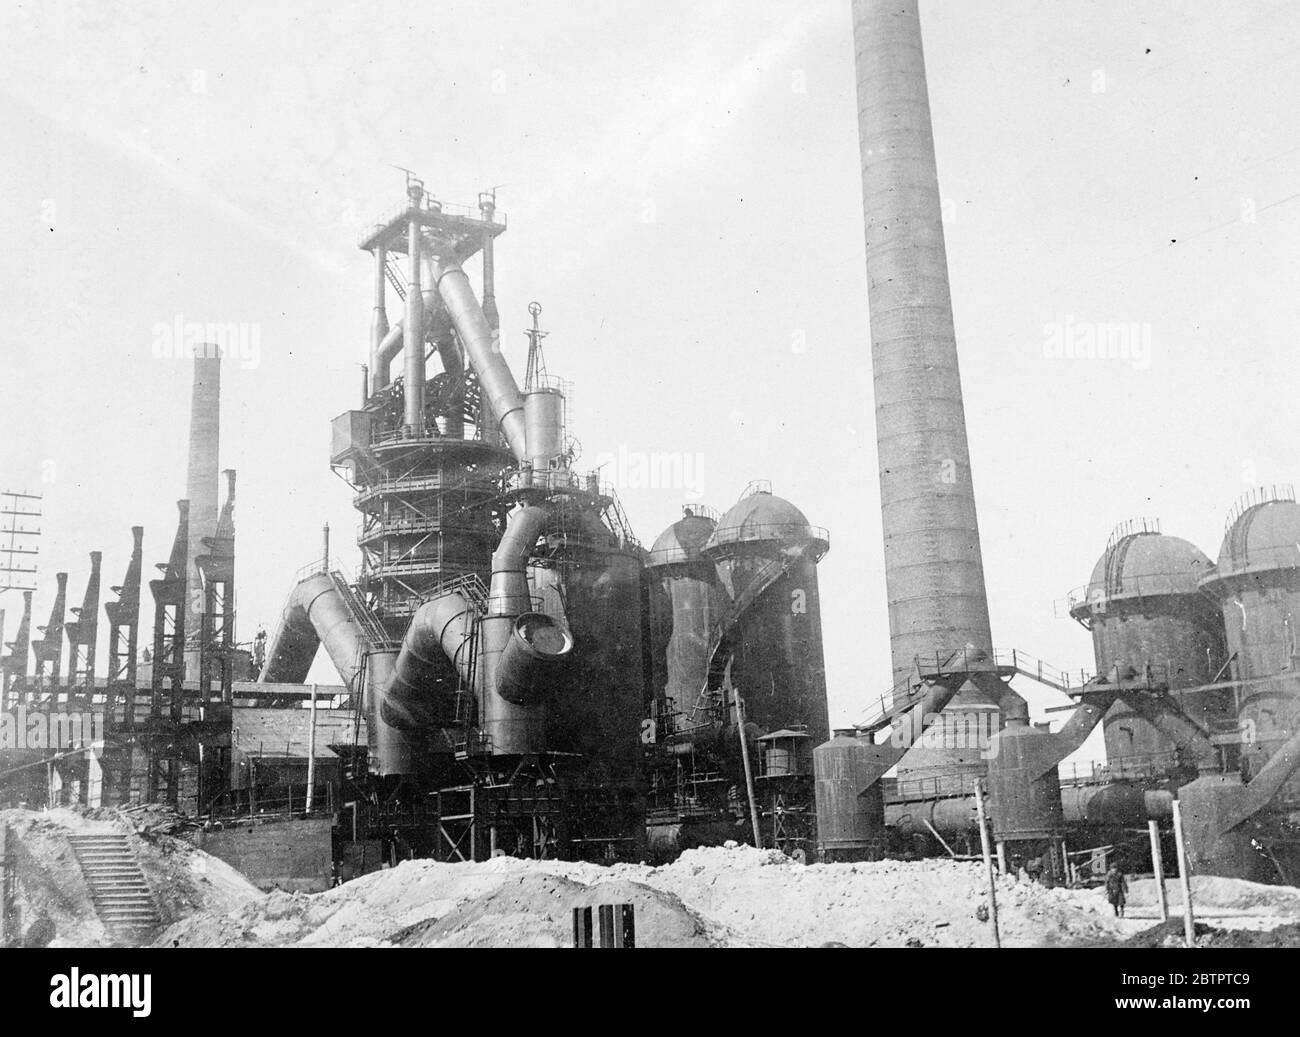 Sowjetische Hochöfen. Einer der riesigen Hochöfen in Dnepropetrowsk, UdSSR. Stockfoto